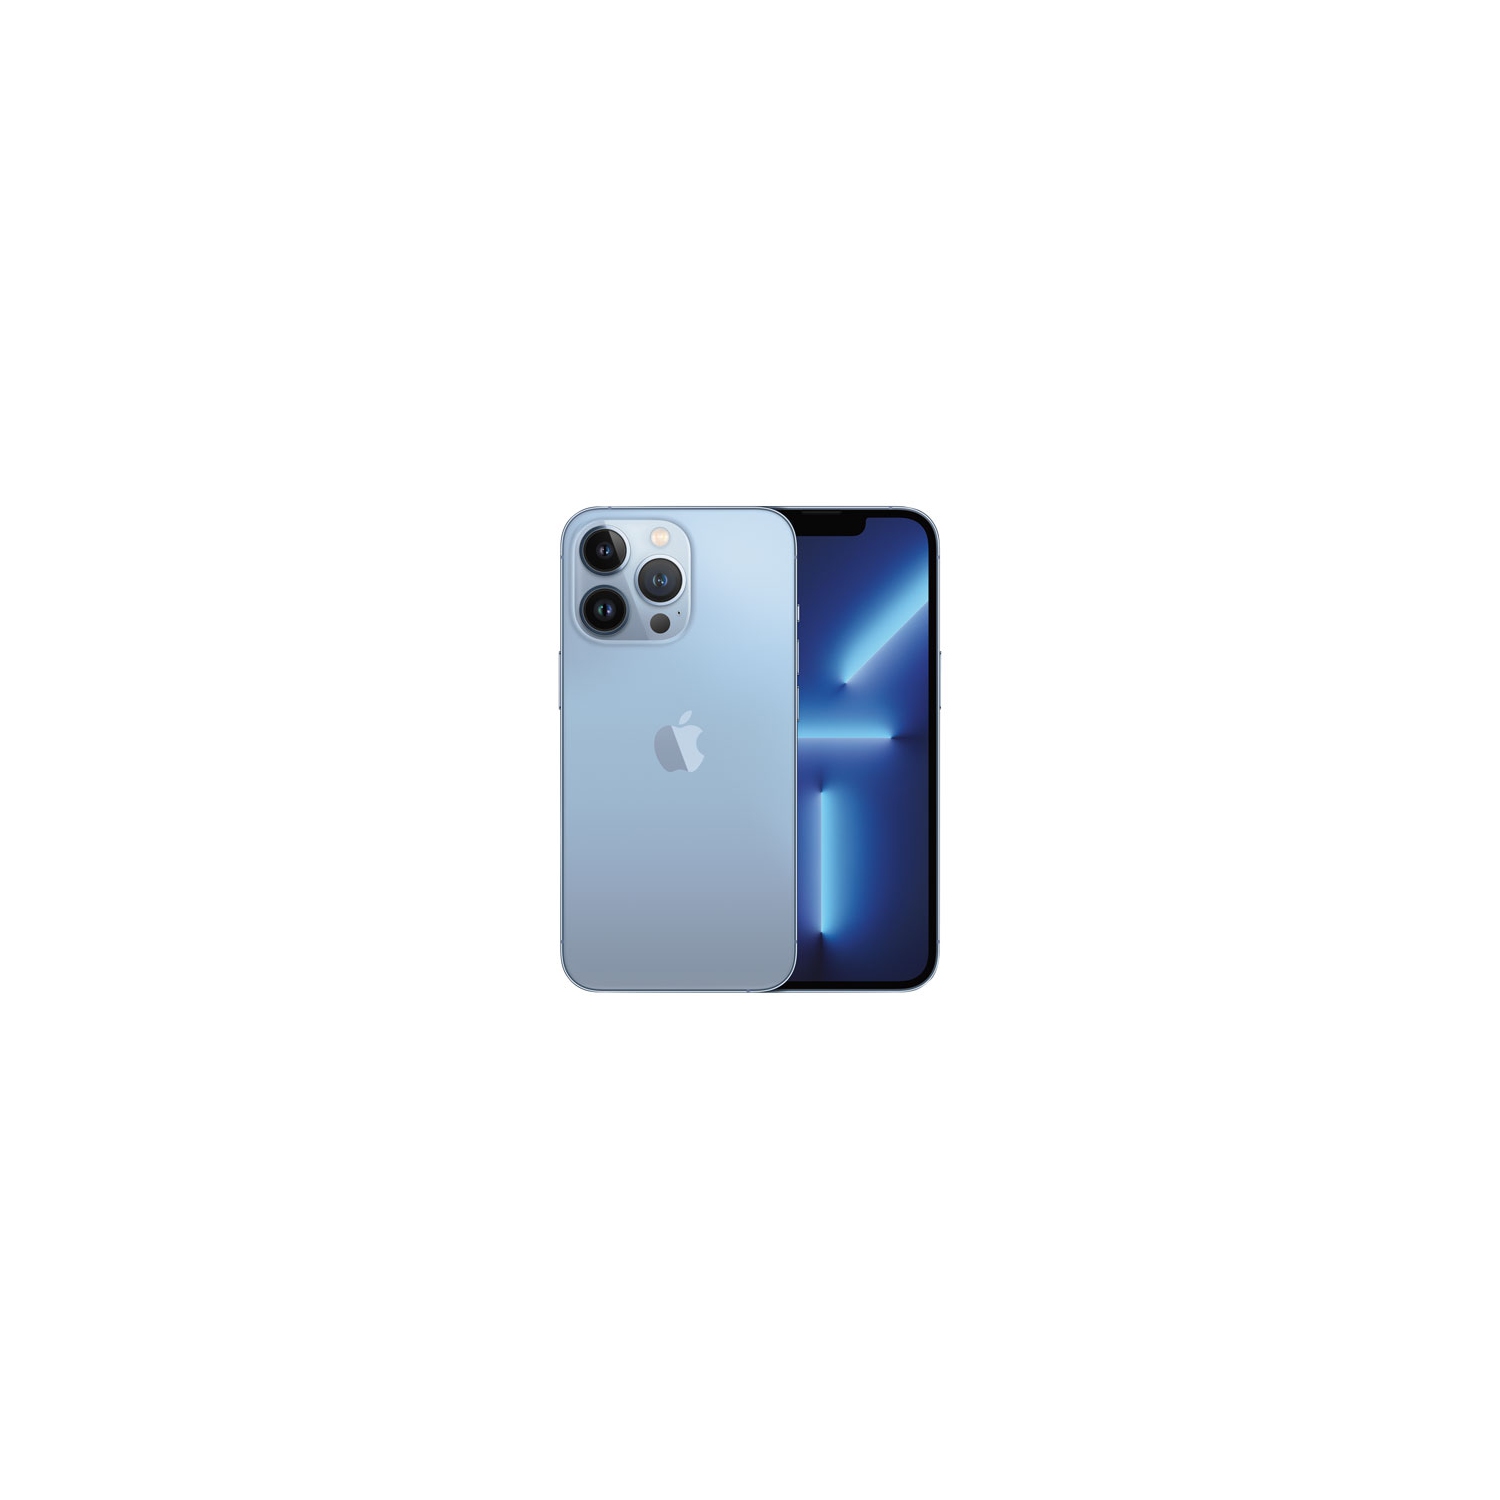 Apple iPhone 13 Pro 1TB - Sierra Blue - Unlocked - Certified Pre-Owned